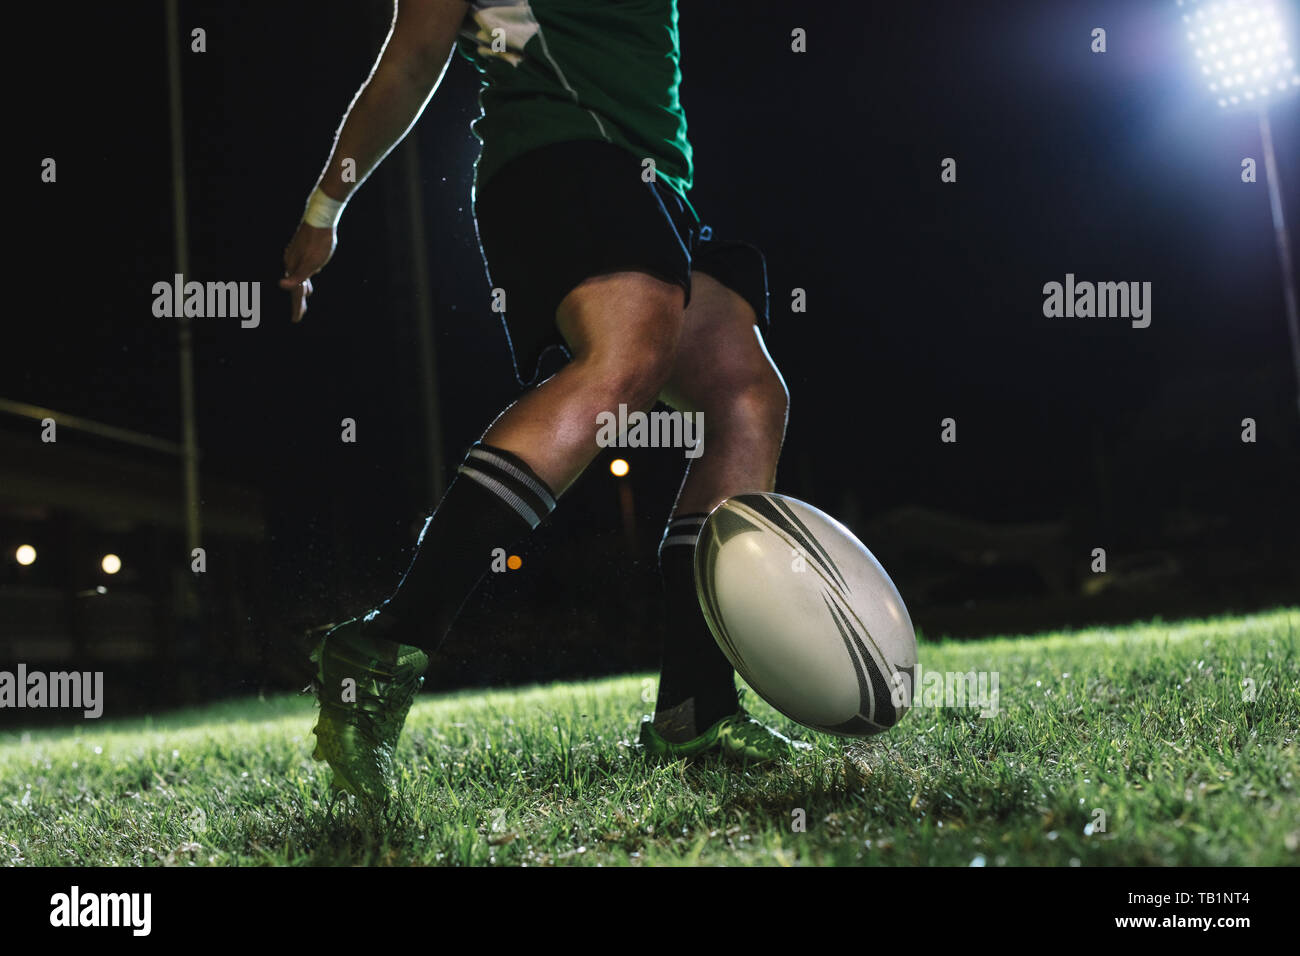 Der rugbyspieler lässt den Ball auf den Boden fallen und tritt ihn dann gerade beim Abprallen. rugby-Spieler trifft in der Sportarena unter Licht ein fallendes Tor. Stockfoto